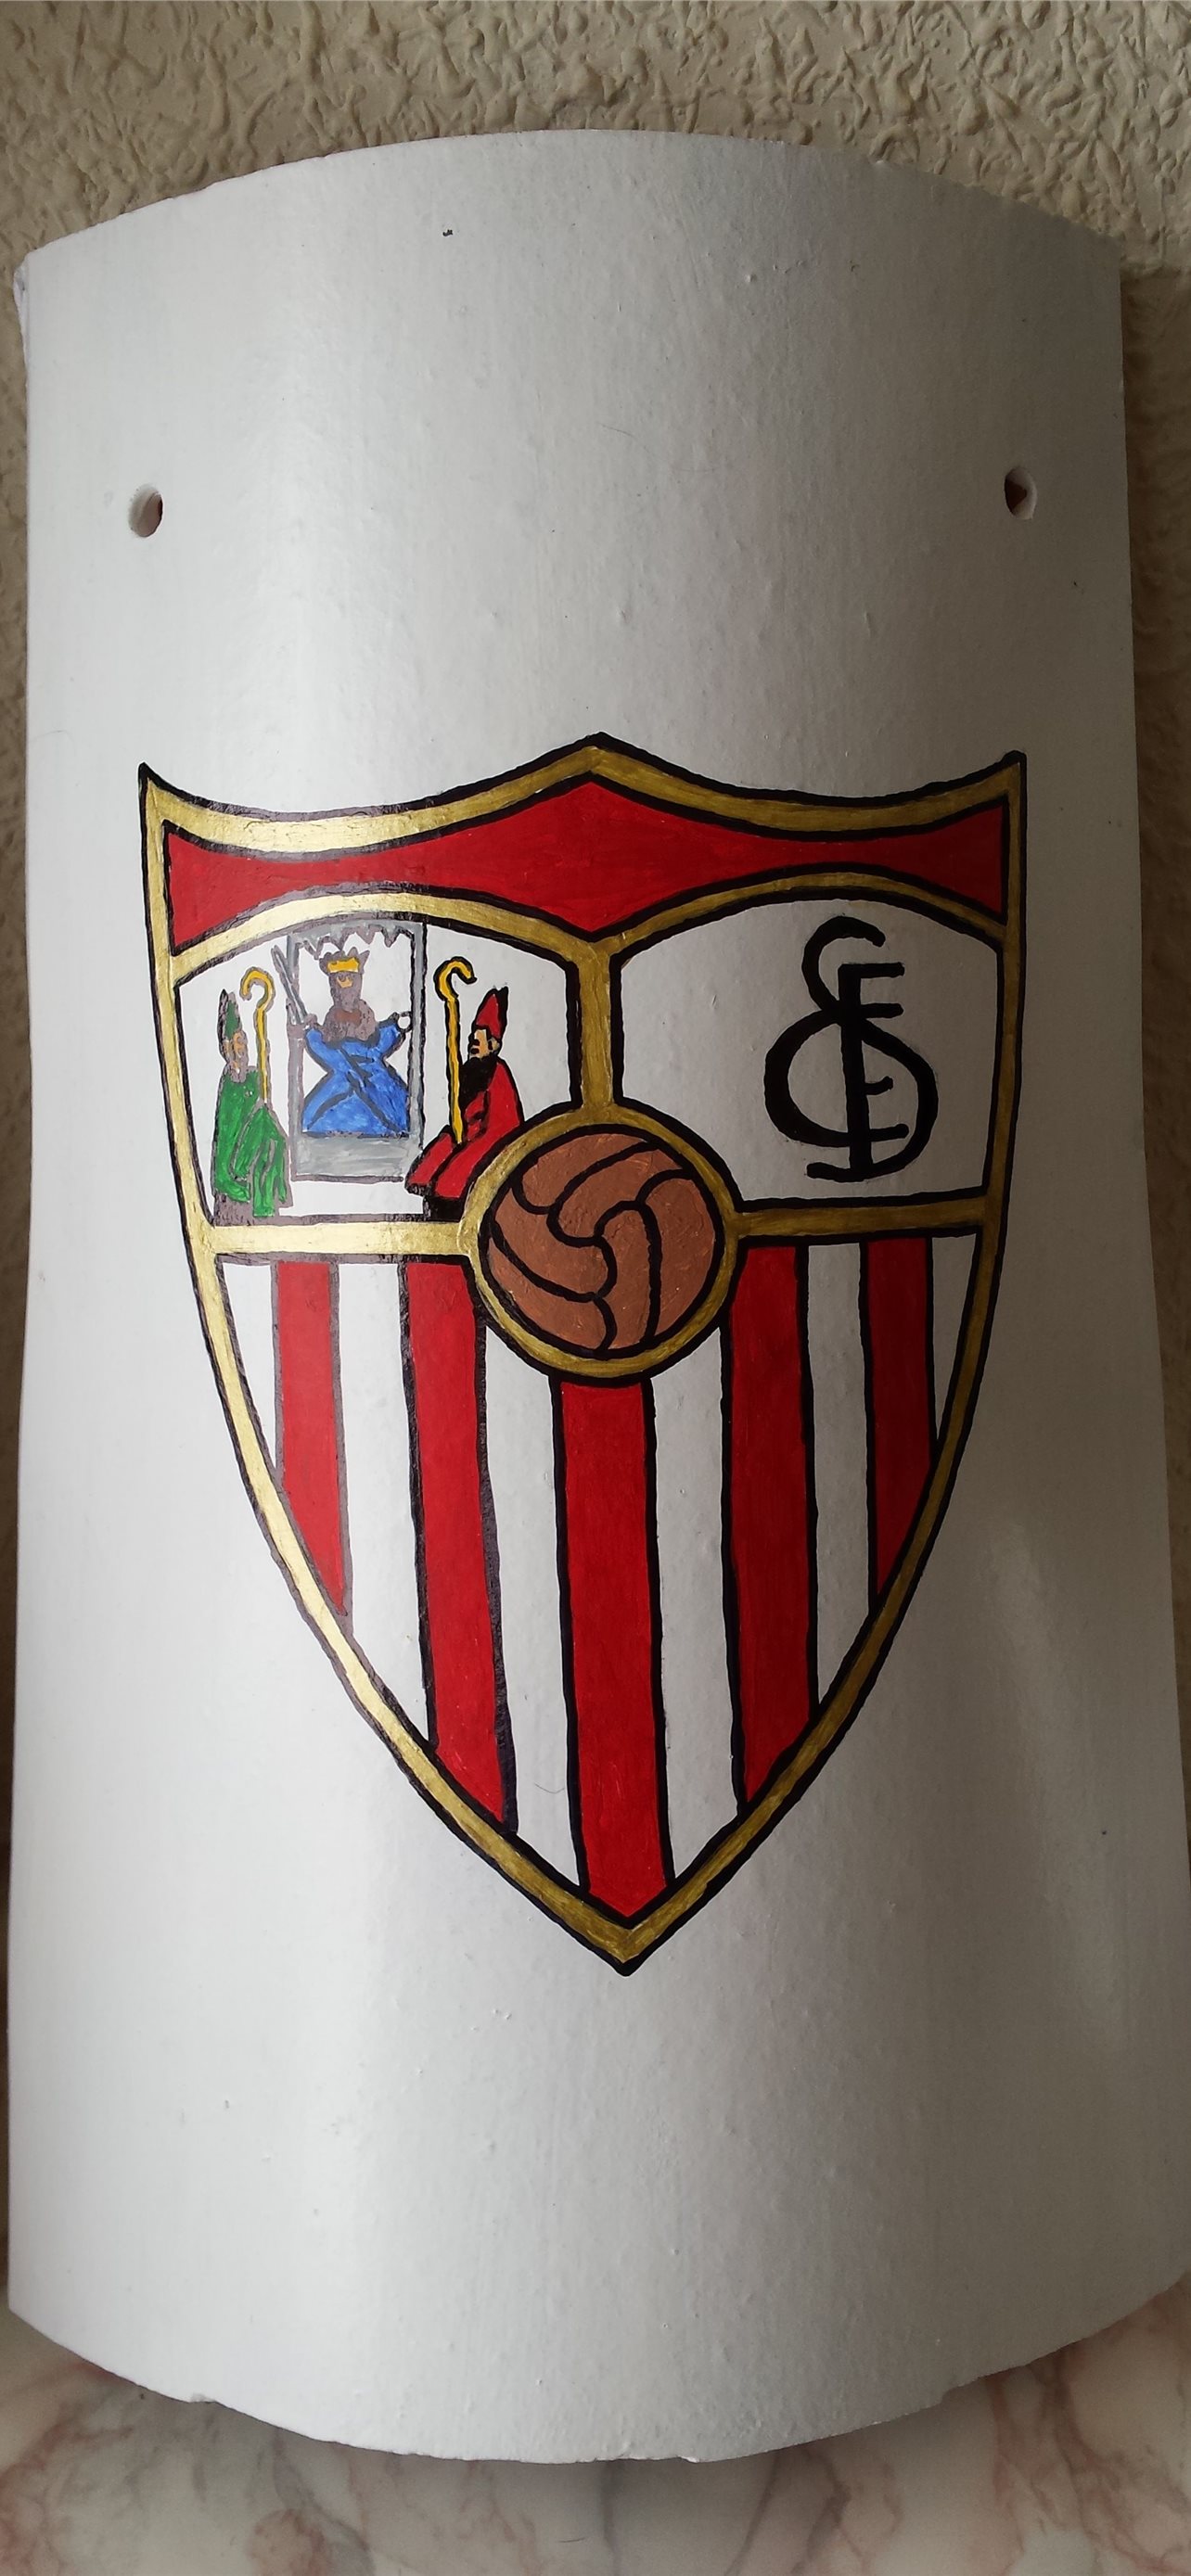 Sevilla Fc Wallpapers